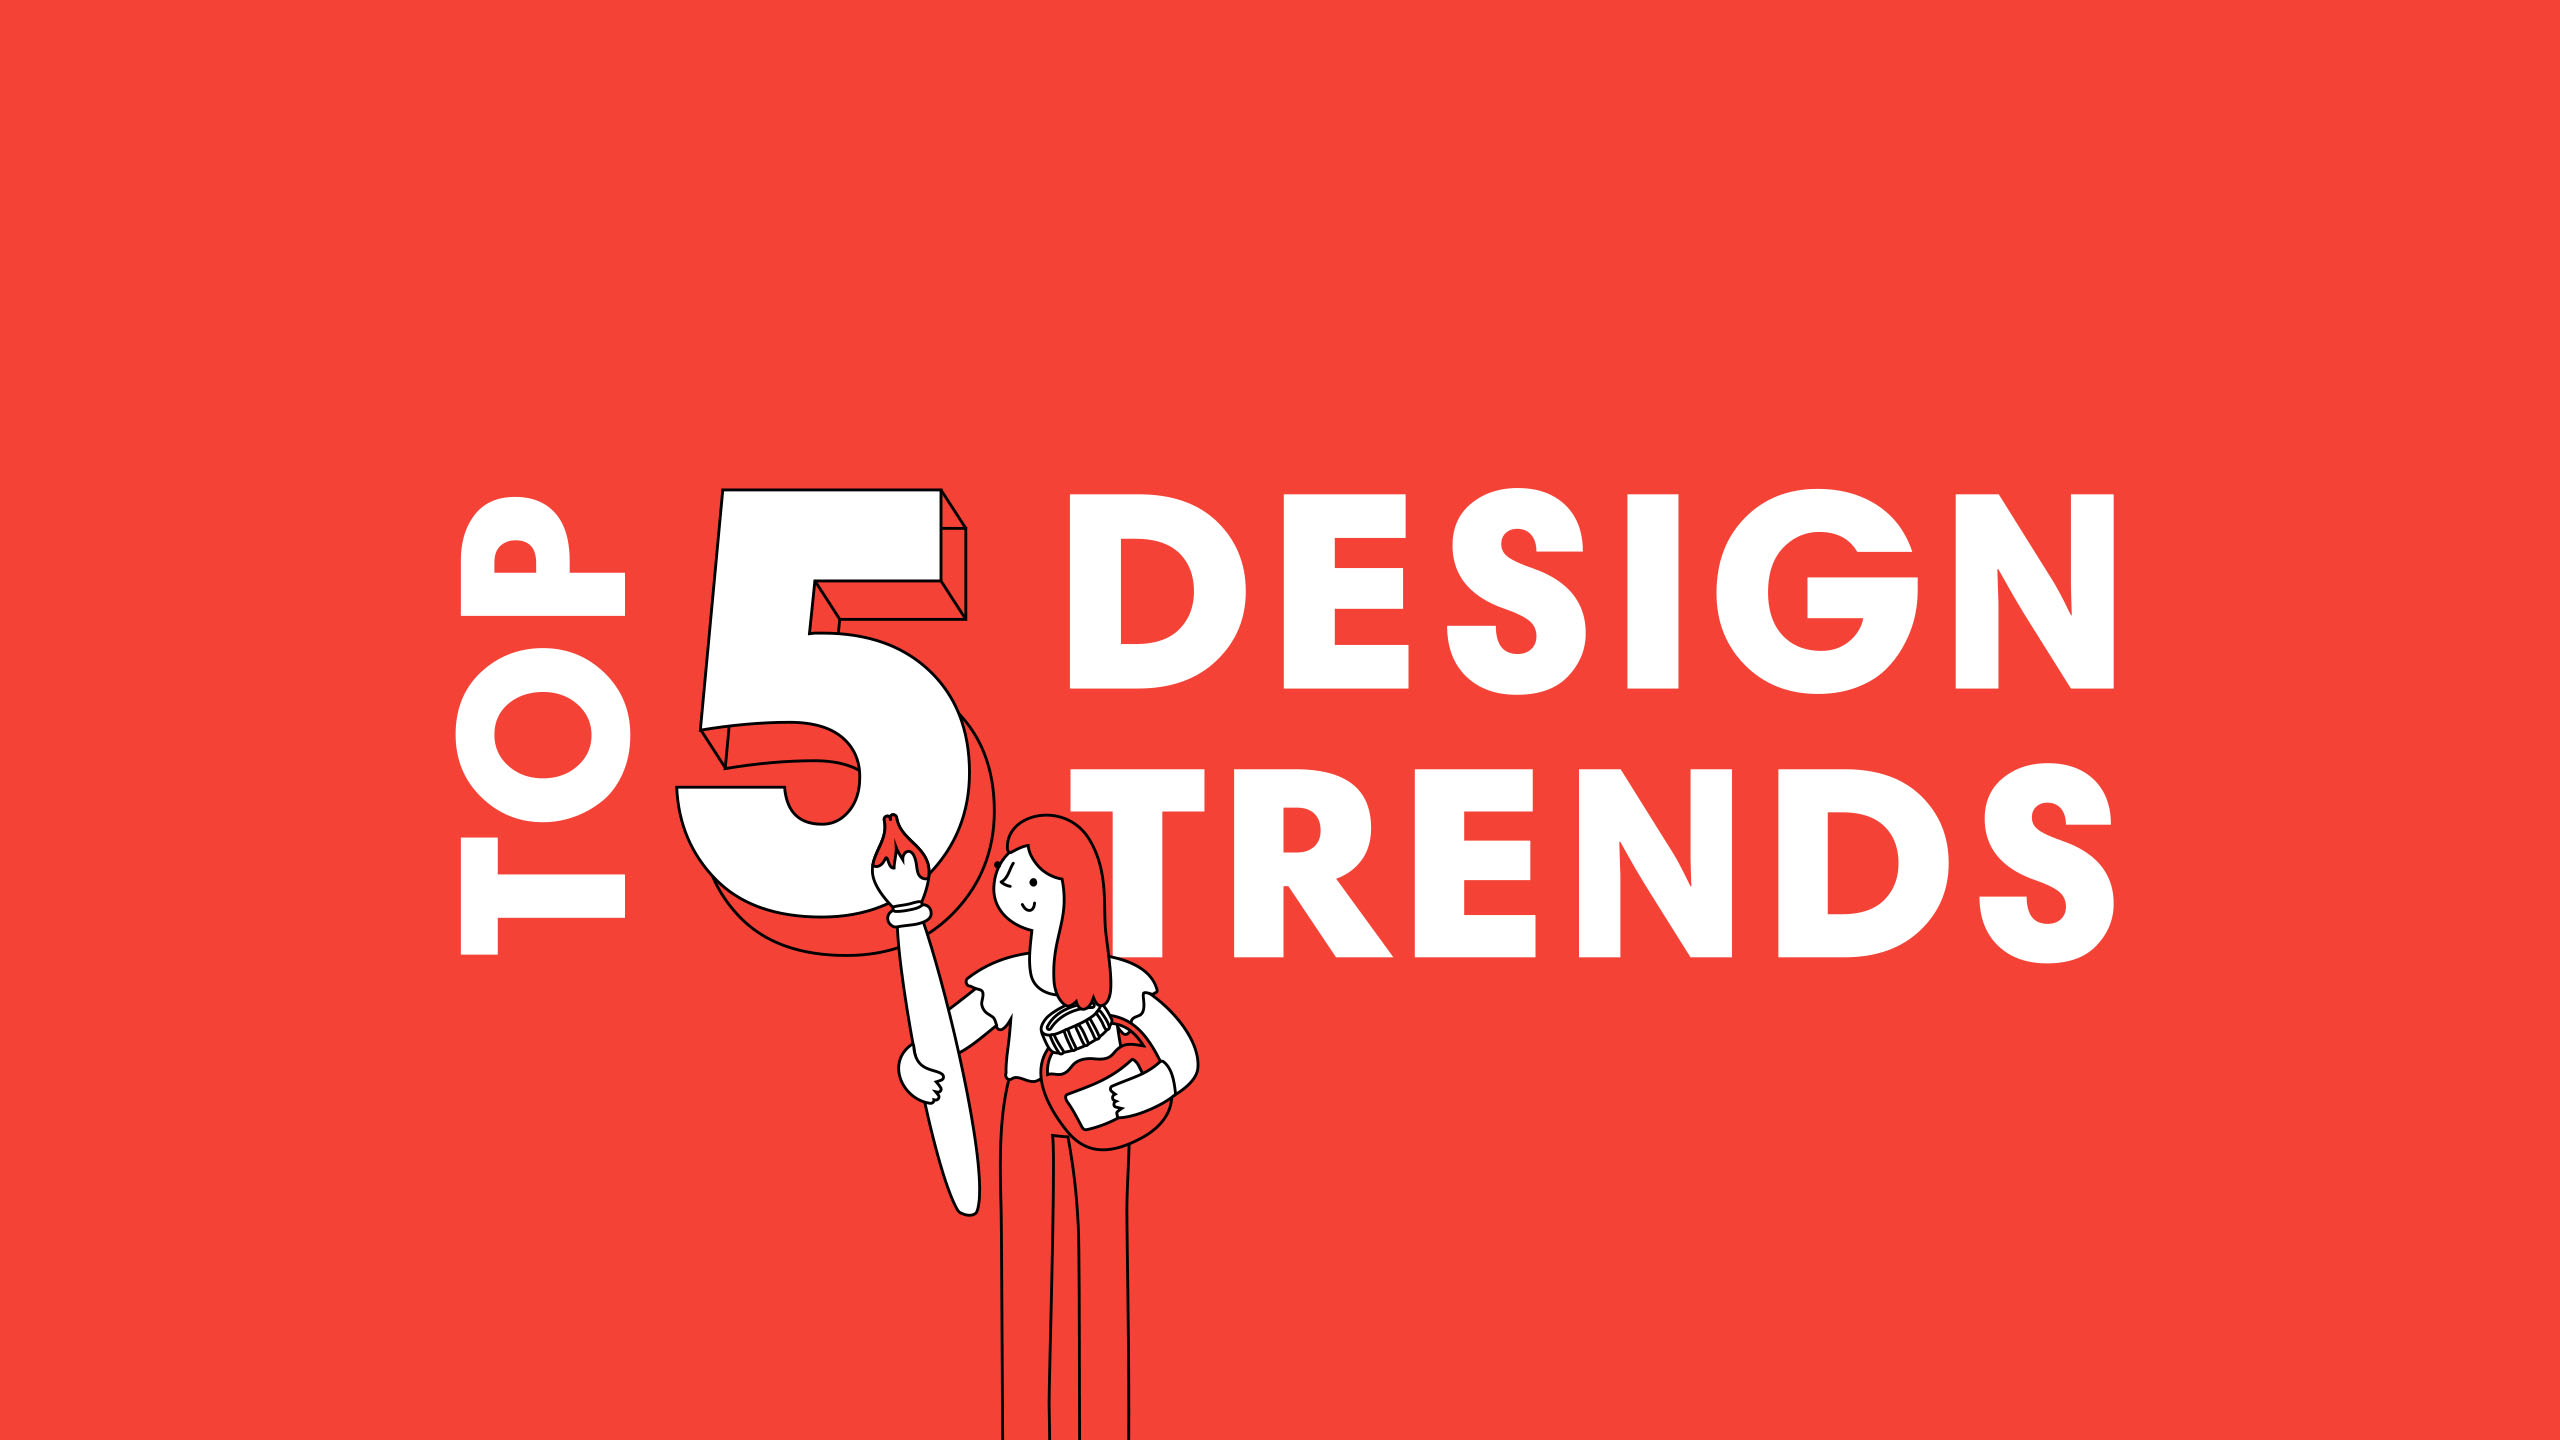 Design trends